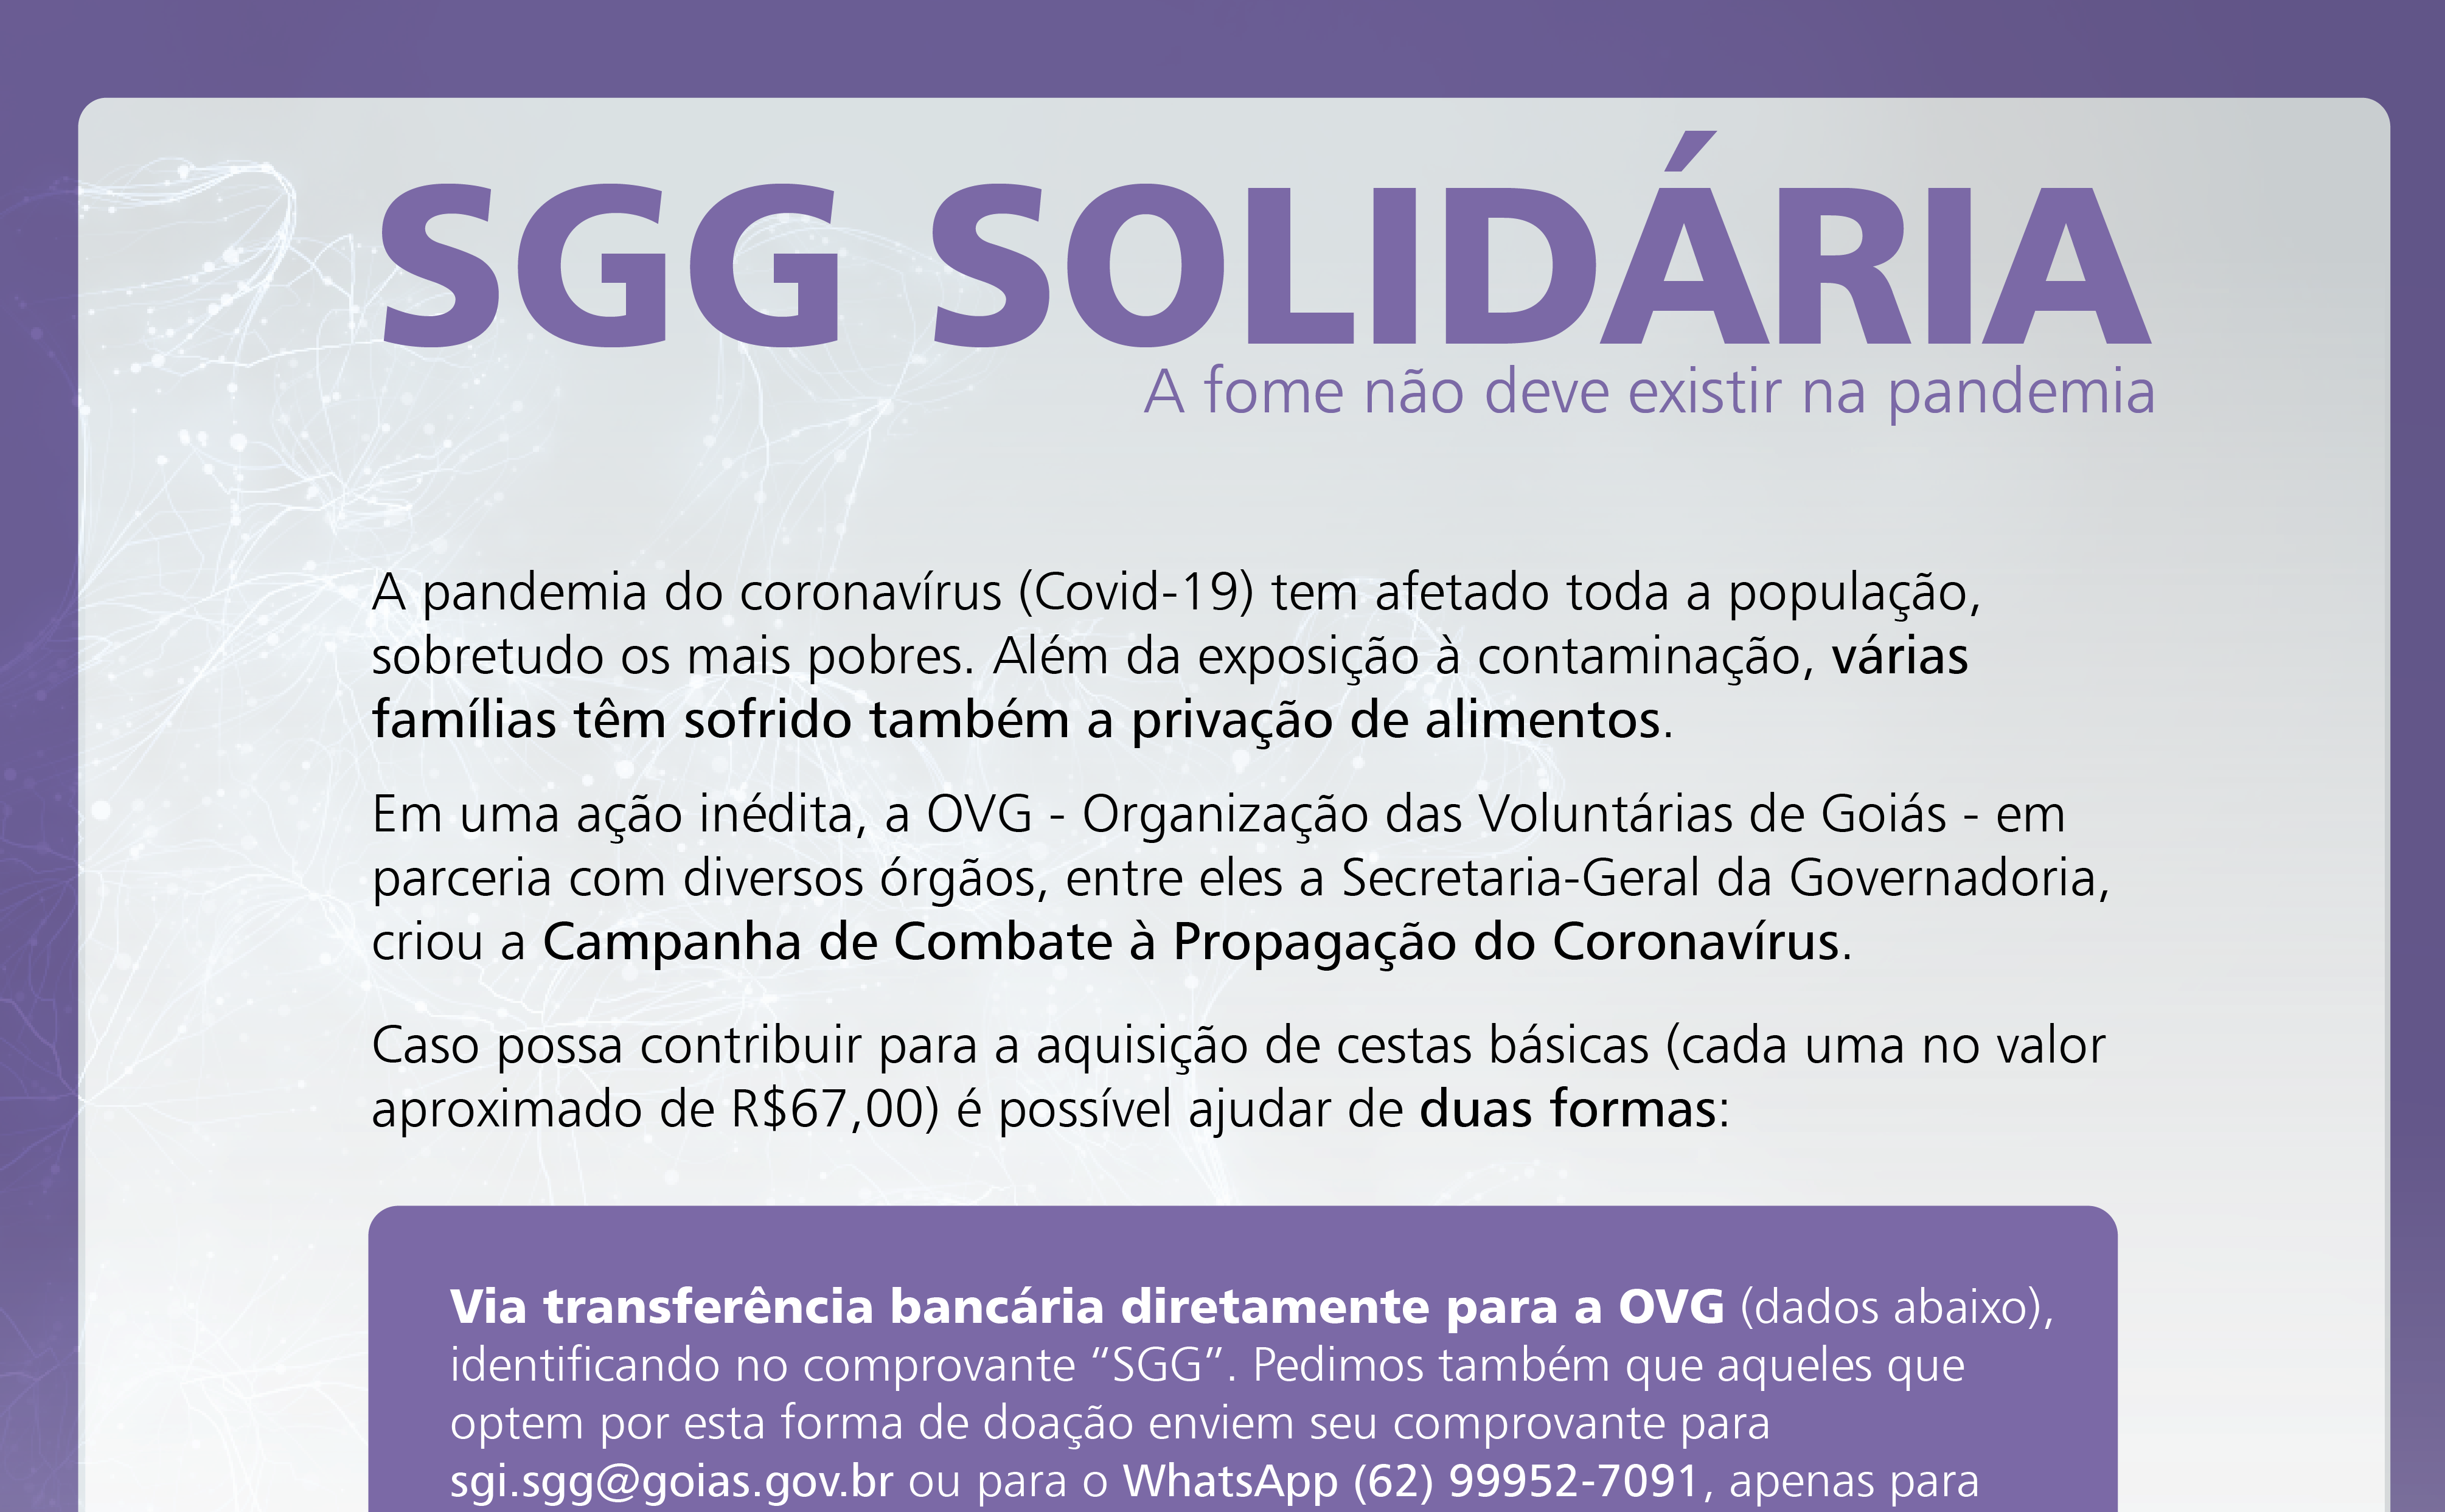 SGG Solidária – Campanha conta a fome